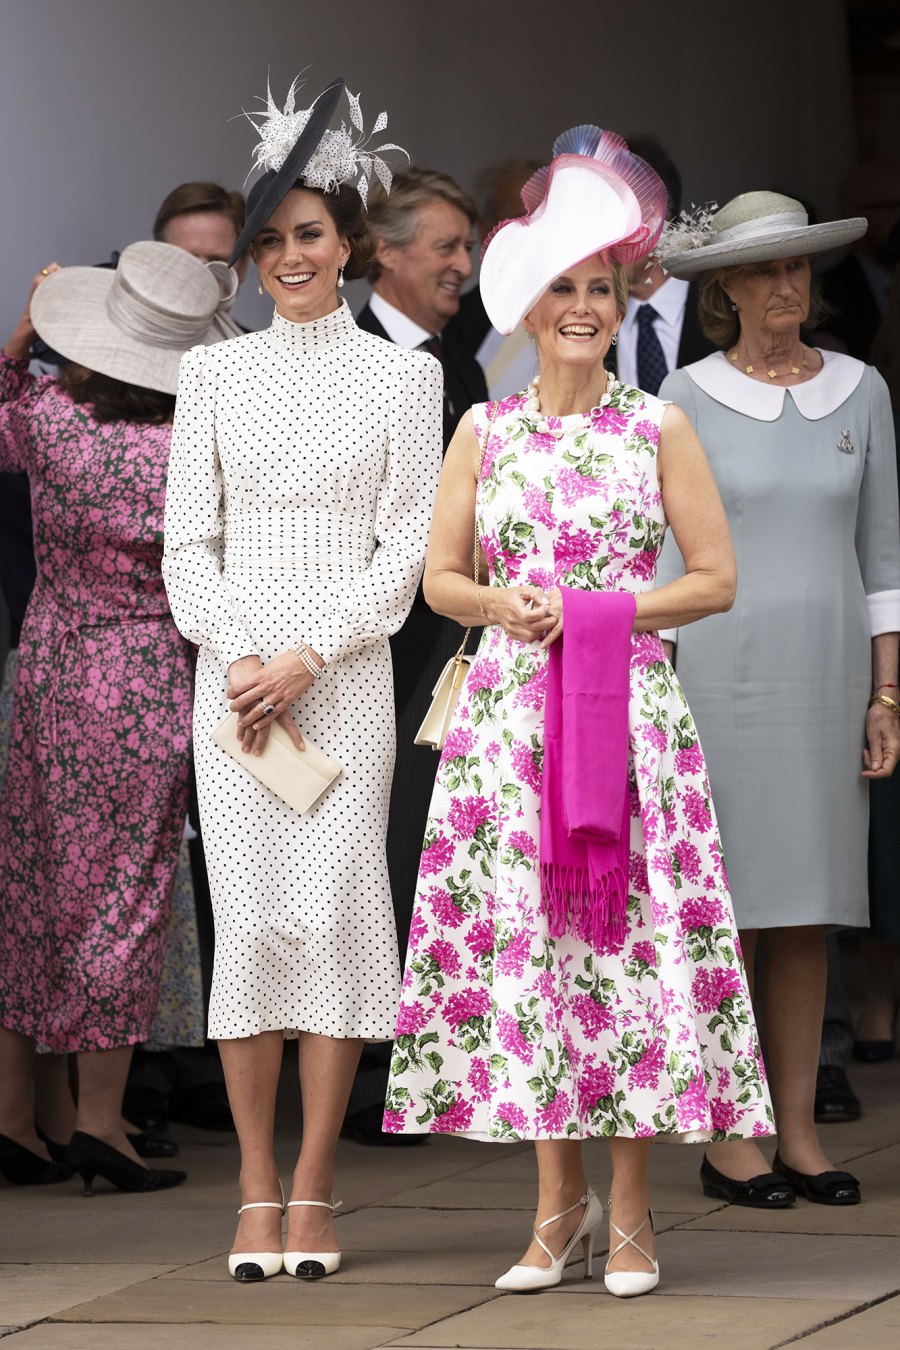 Kate Middleton Wears Polka Dot Dress for Order of the Garter: Pics | Us ...